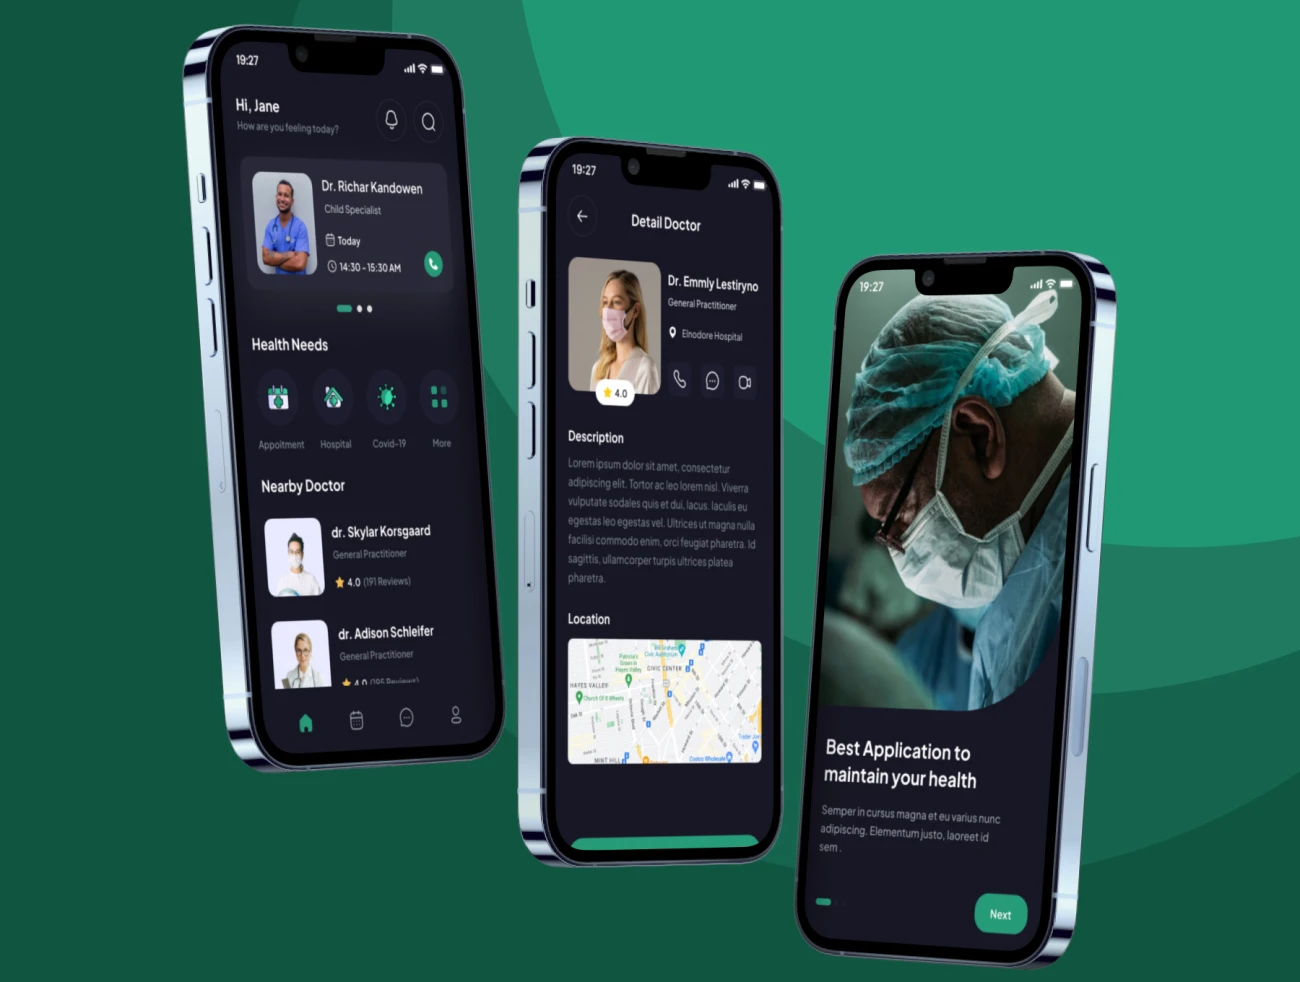 40屏在线医疗远程看病应用UI设计套件 ChekHealt - Health Apps UI Kits .figma-UI/UX、ui套件、主页、介绍、付款、列表、应用、预订-到位啦UI